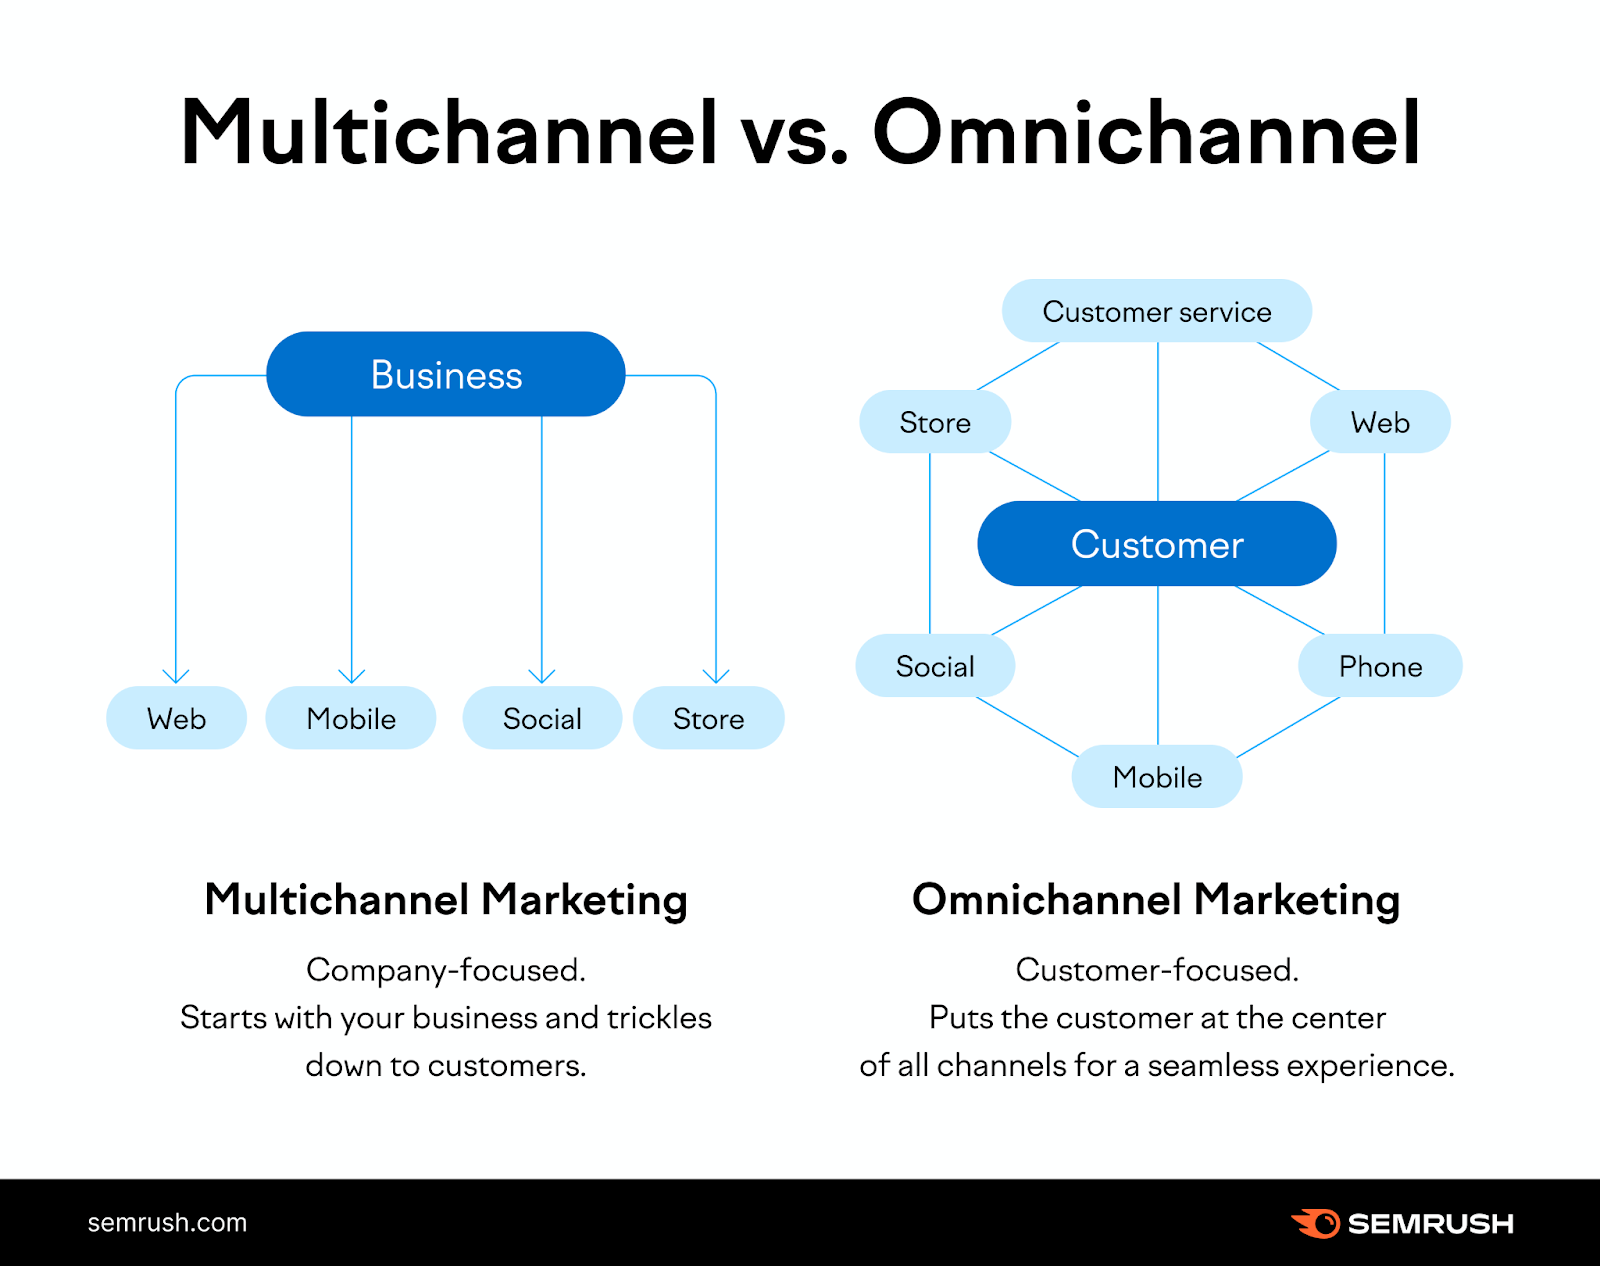 Multichannel vs omnichannel marketing